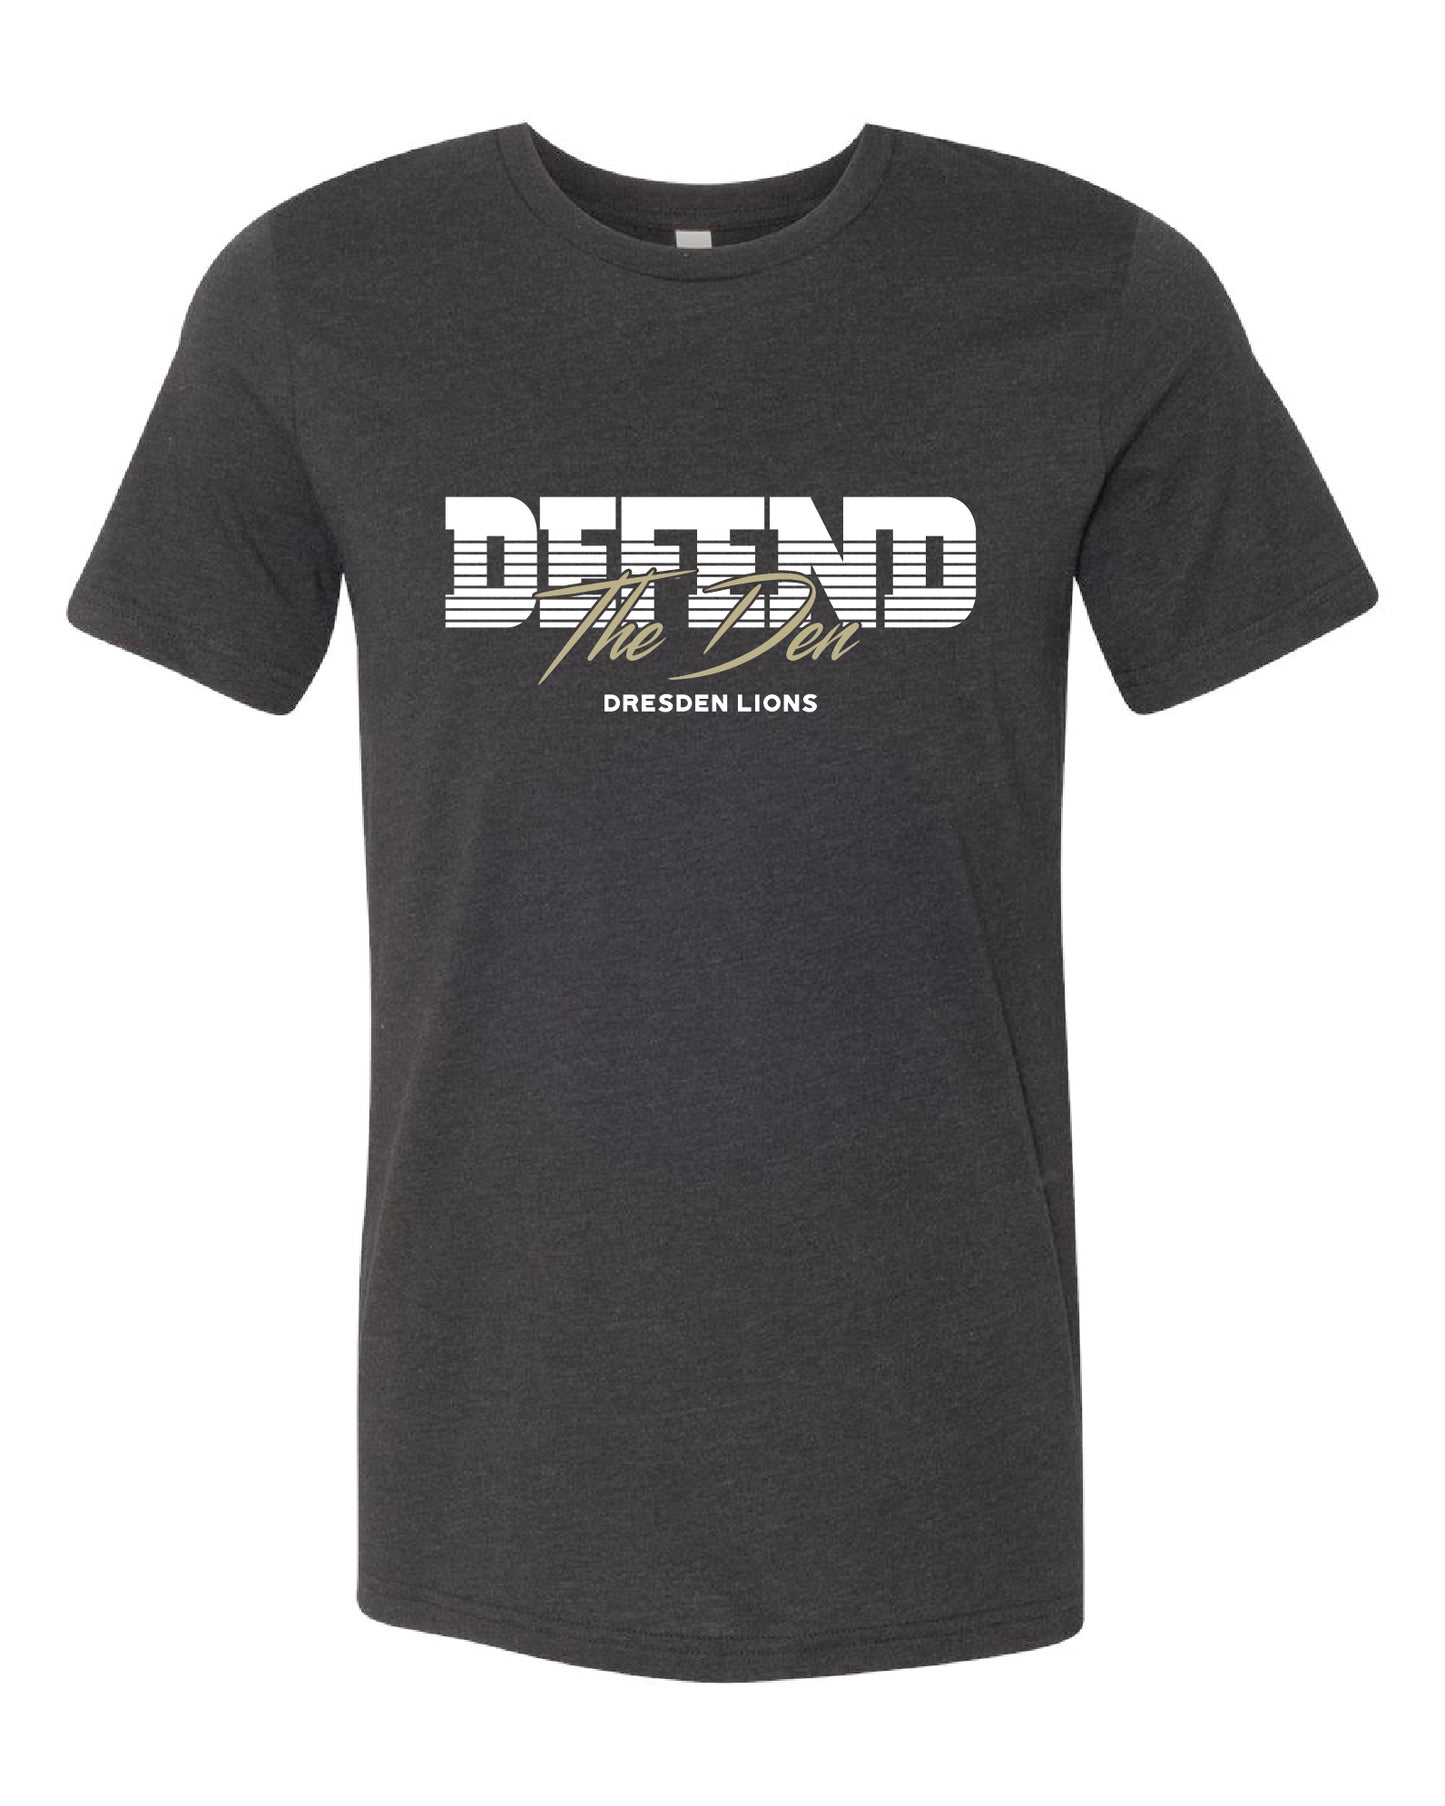 Defend the Den Vintage Lions T-shirt